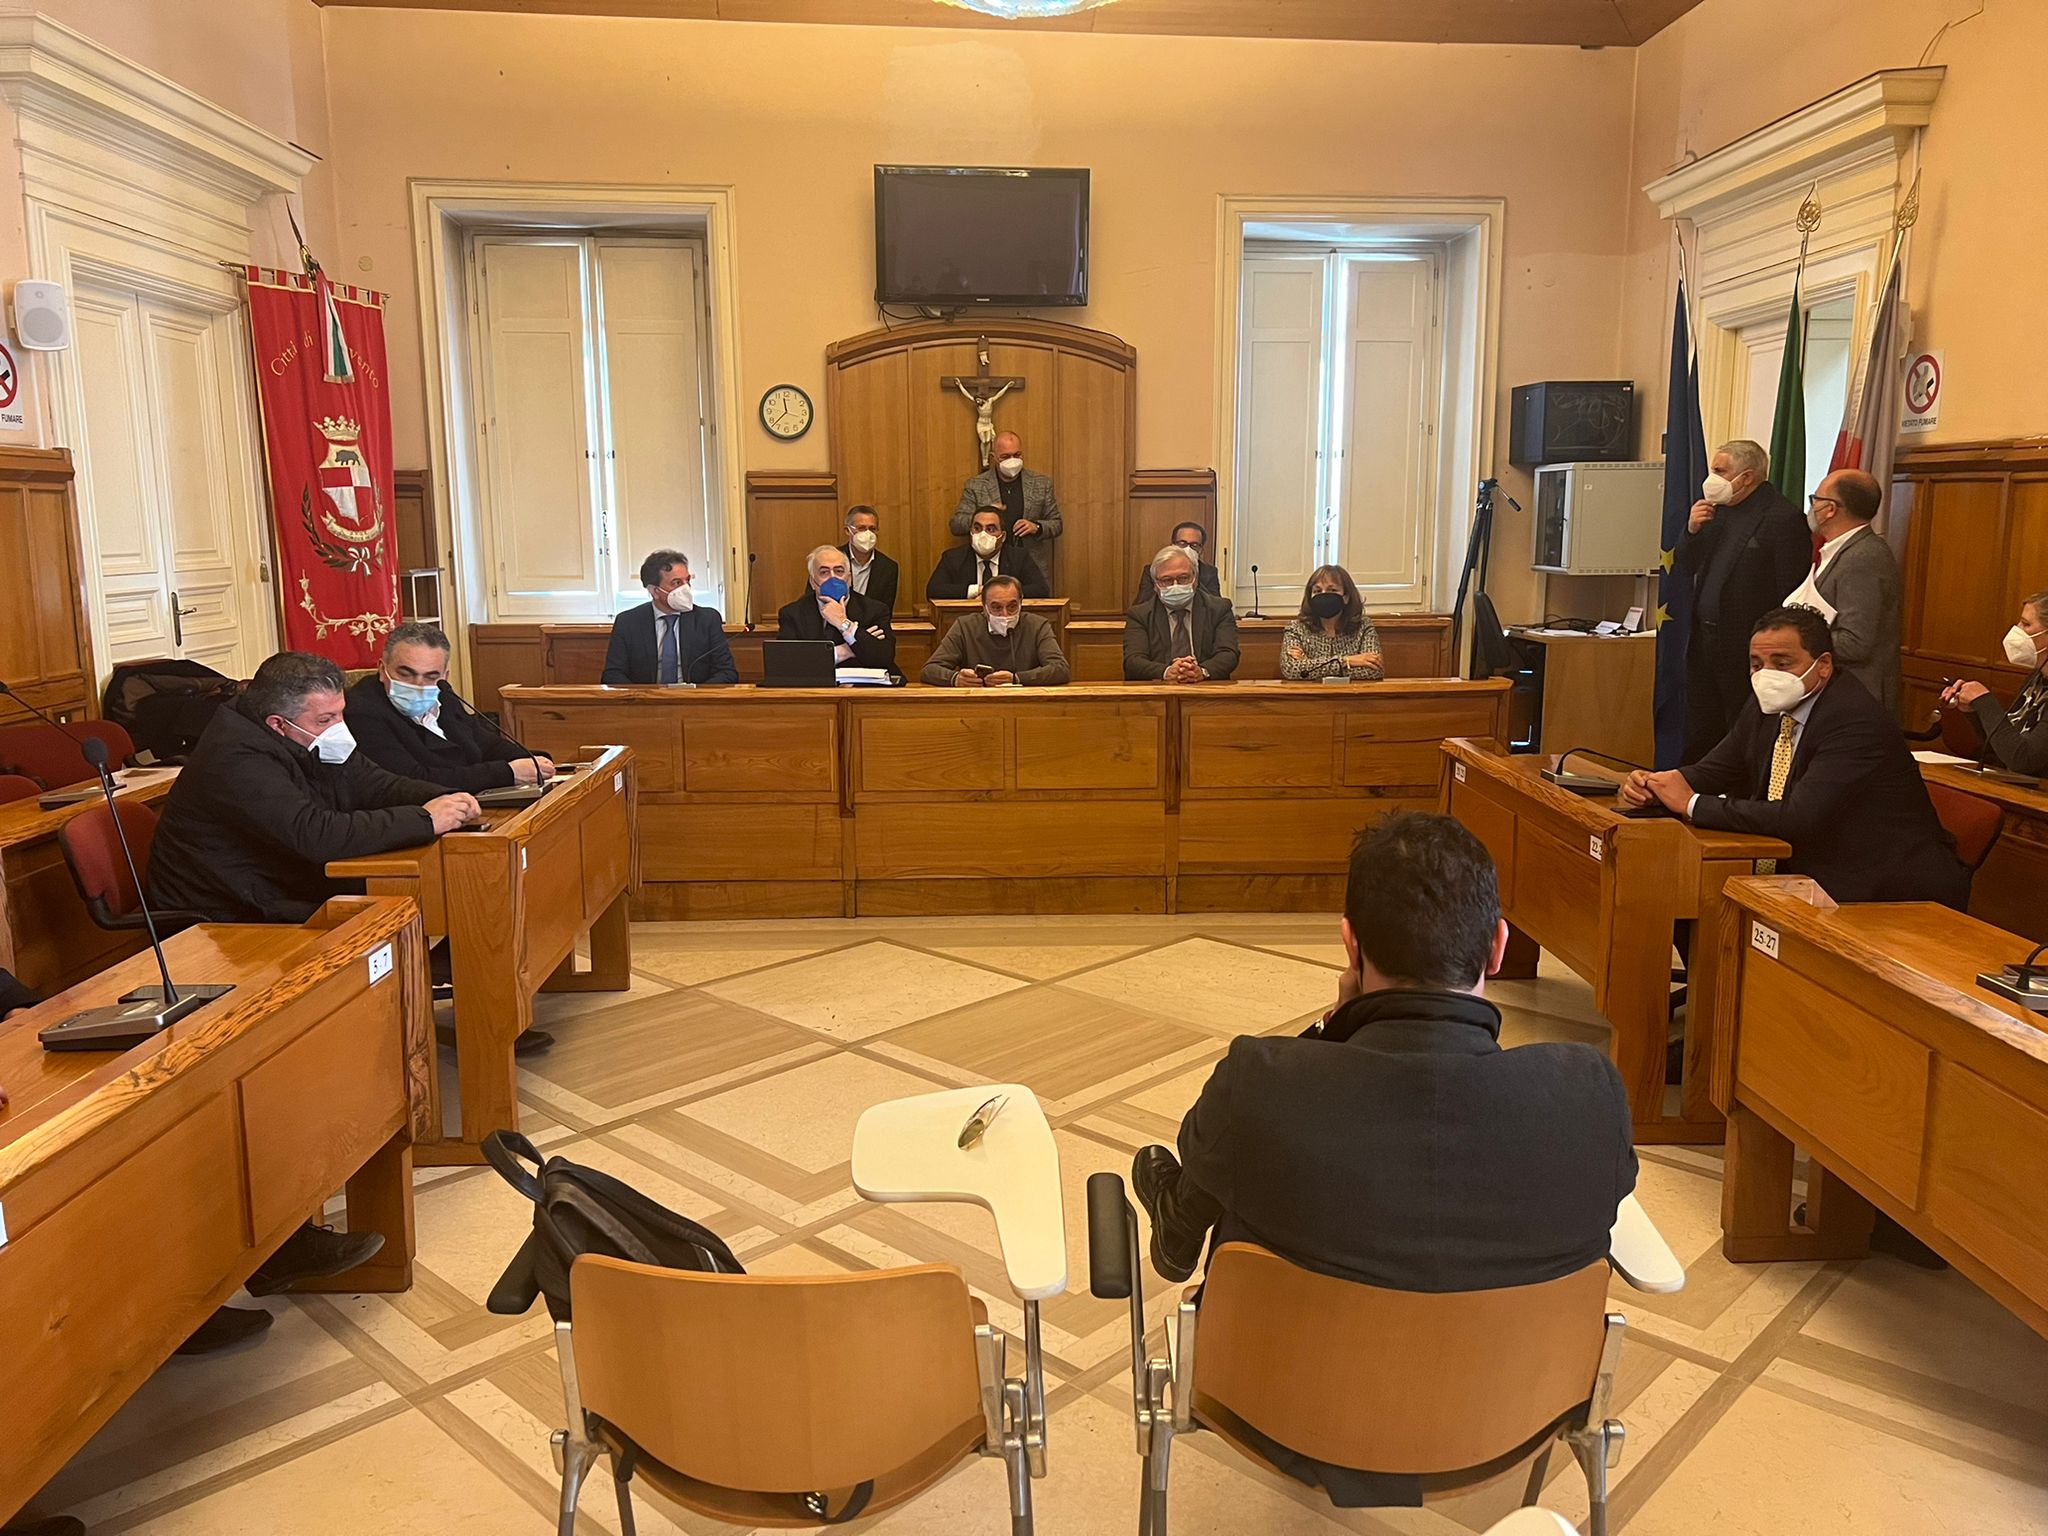 Ospedale Sant’Alfonso Maria de’ Liguori, Mastella: Regione ora ratifichi in fretta atto aziendale San Pio